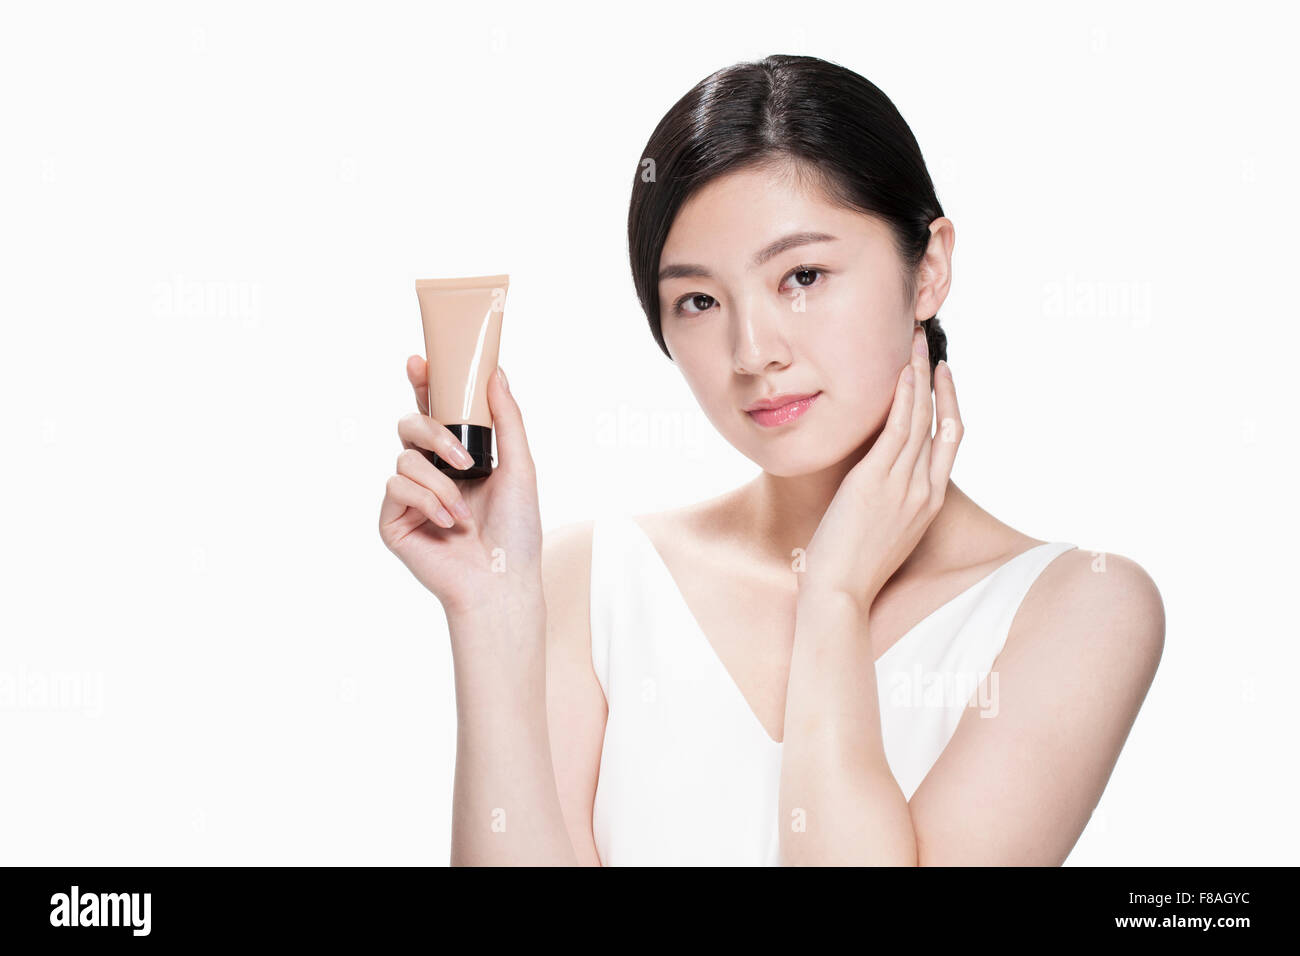 Junge asiatische Frau hält eine Tube Make-up-Produkt und den Hals mit der anderen Hand berühren Stockfoto